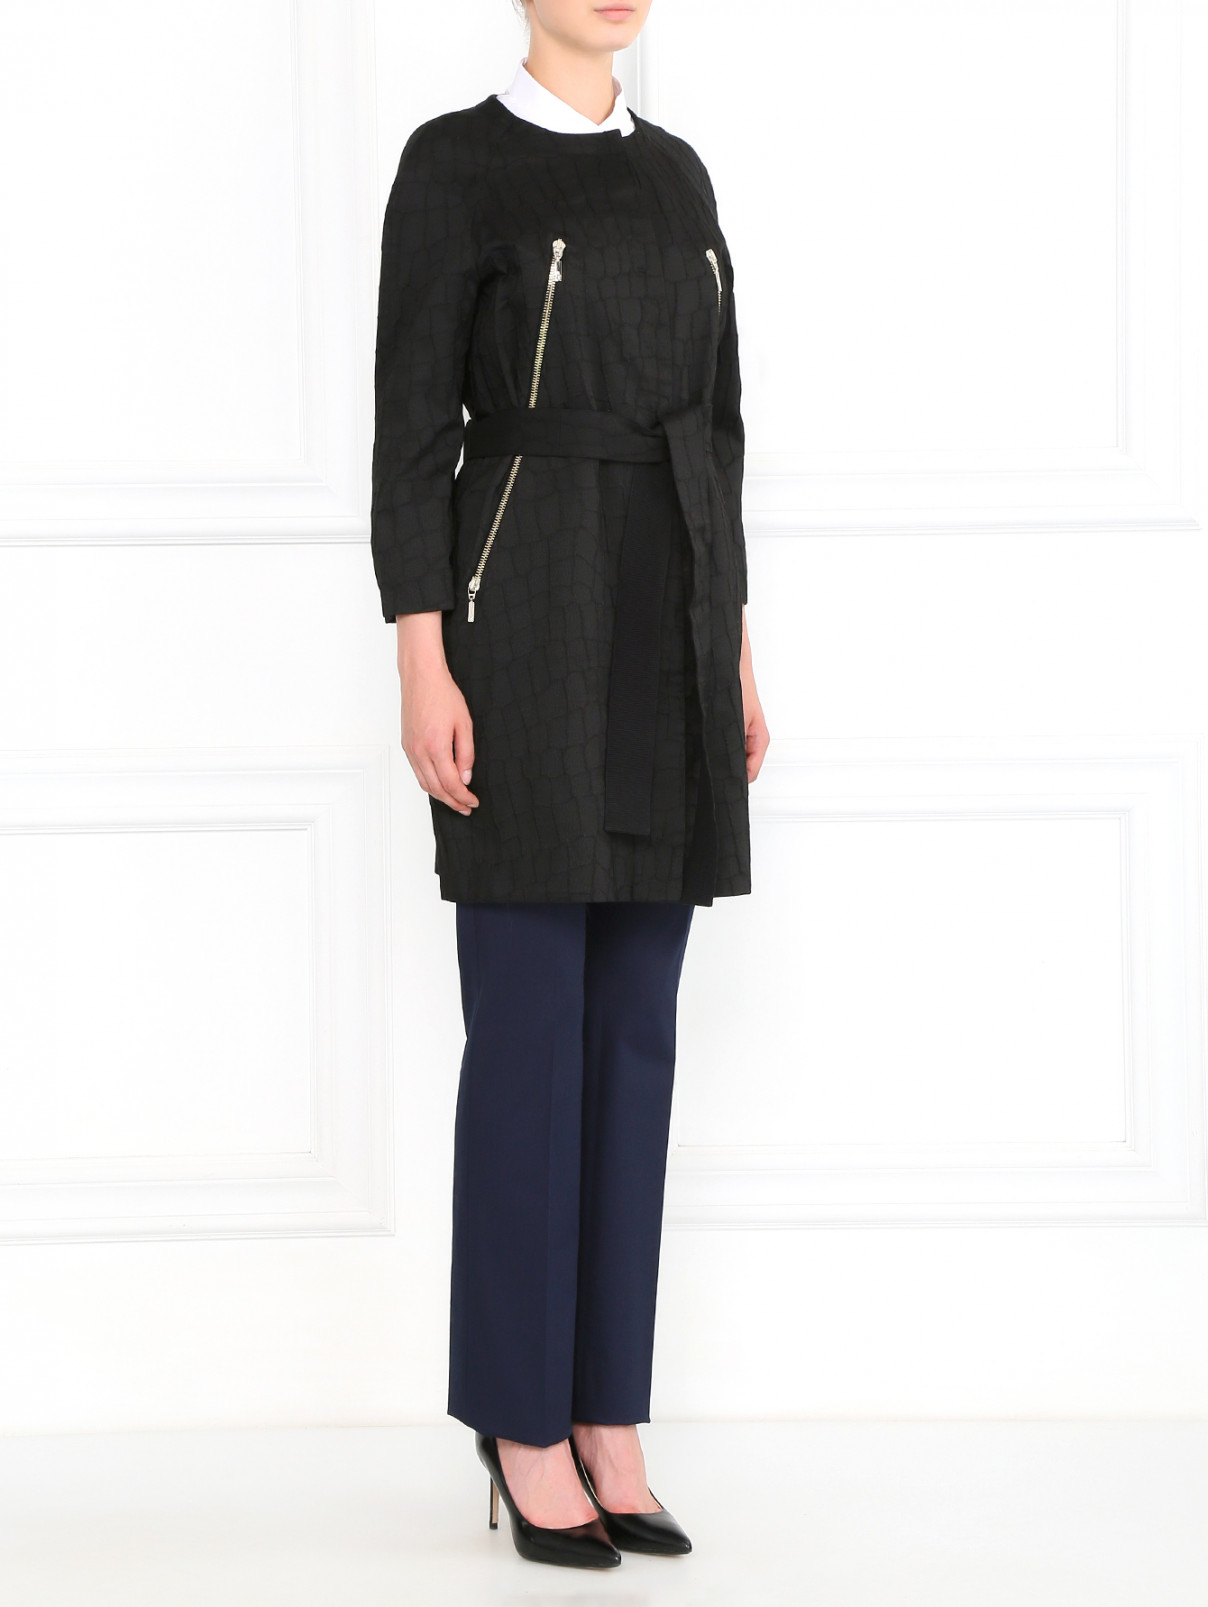 Легкое пальто из фактурной ткани на поясе Moncler  –  Модель Общий вид  – Цвет:  Черный